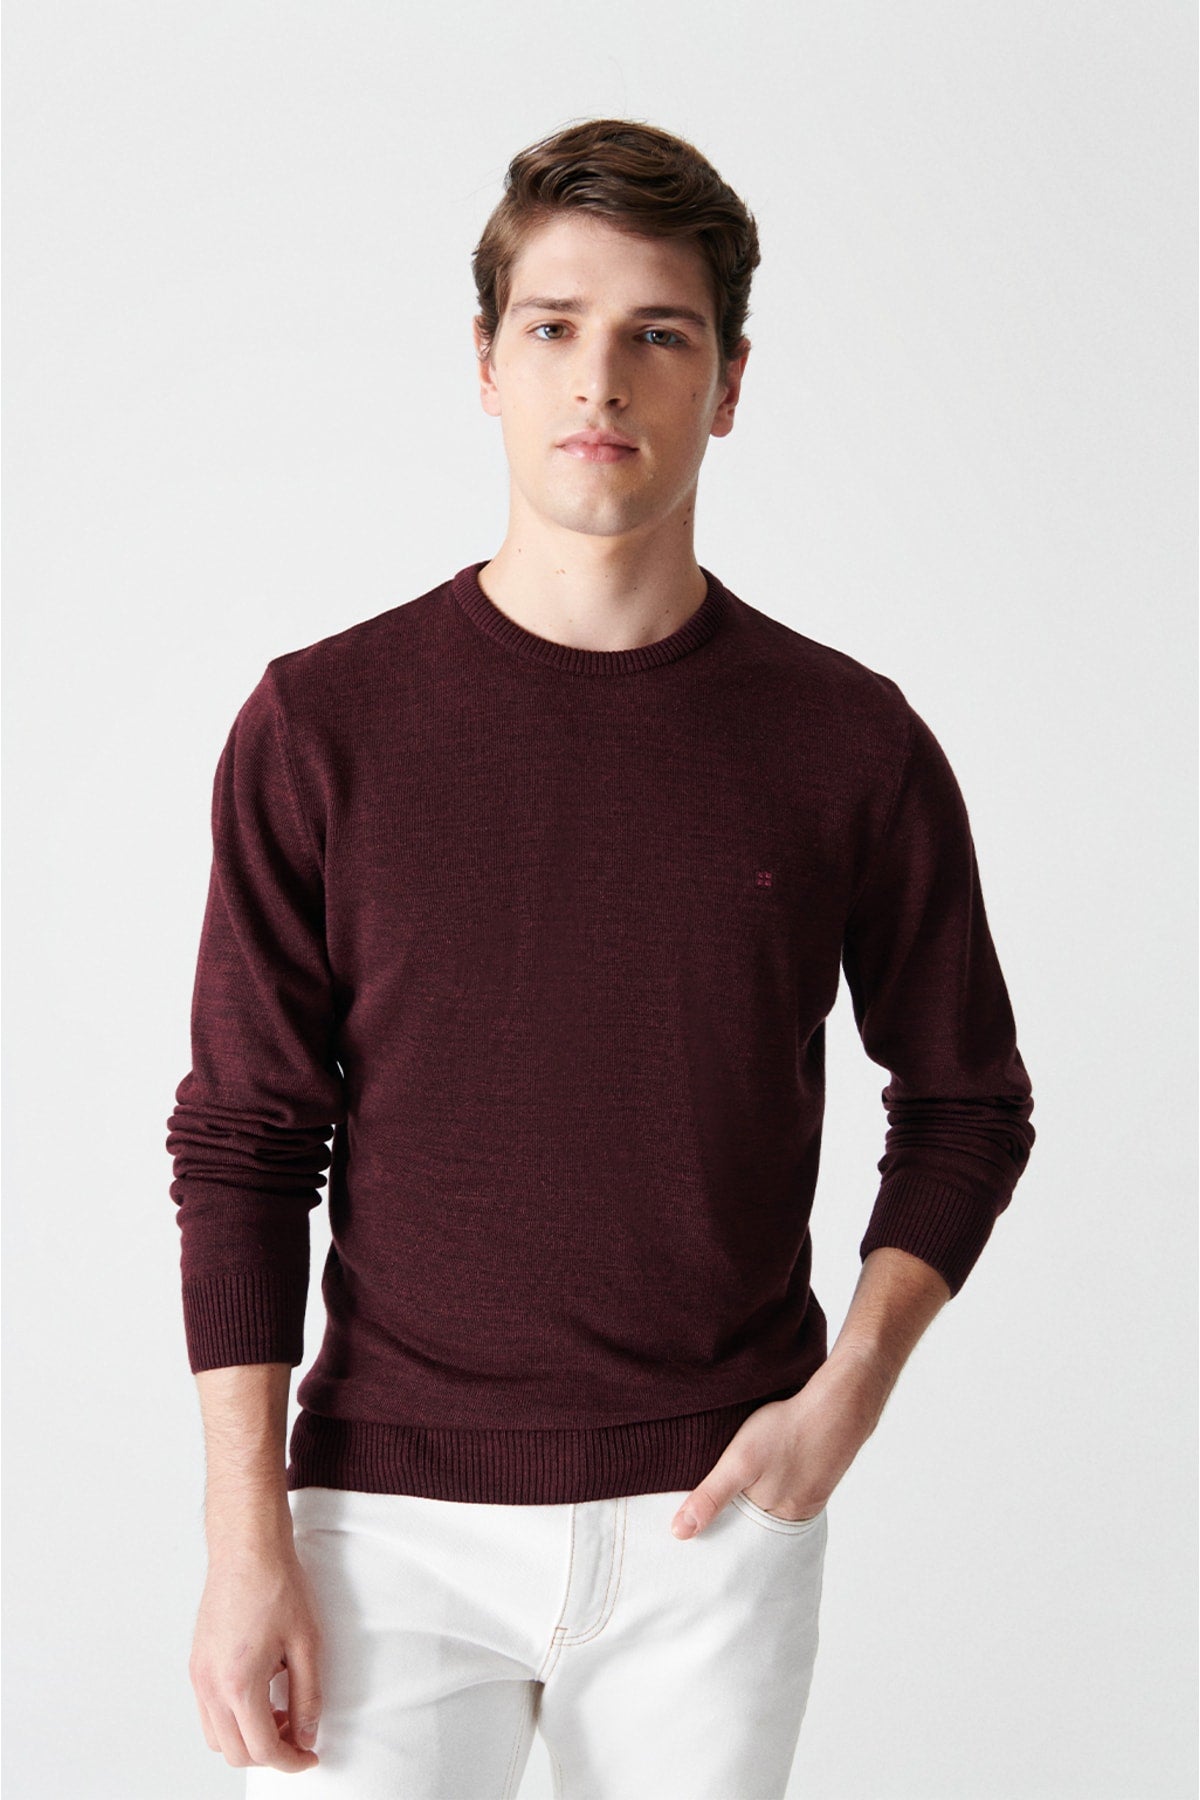 Men's burgundy bike collar regular non -hairy fit sweater E005000